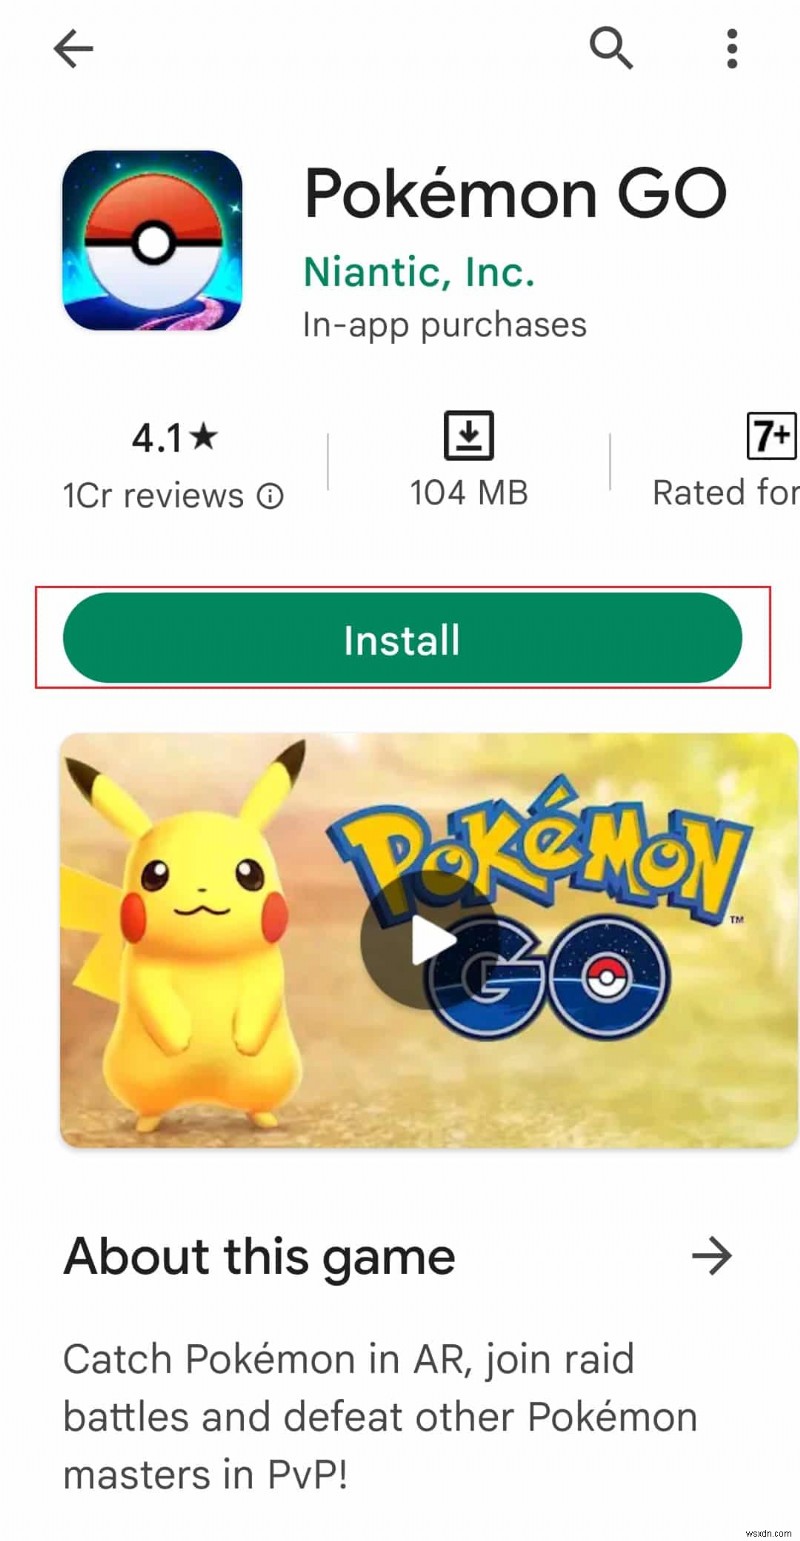 Pokemon GO 로그인 오류 수정 